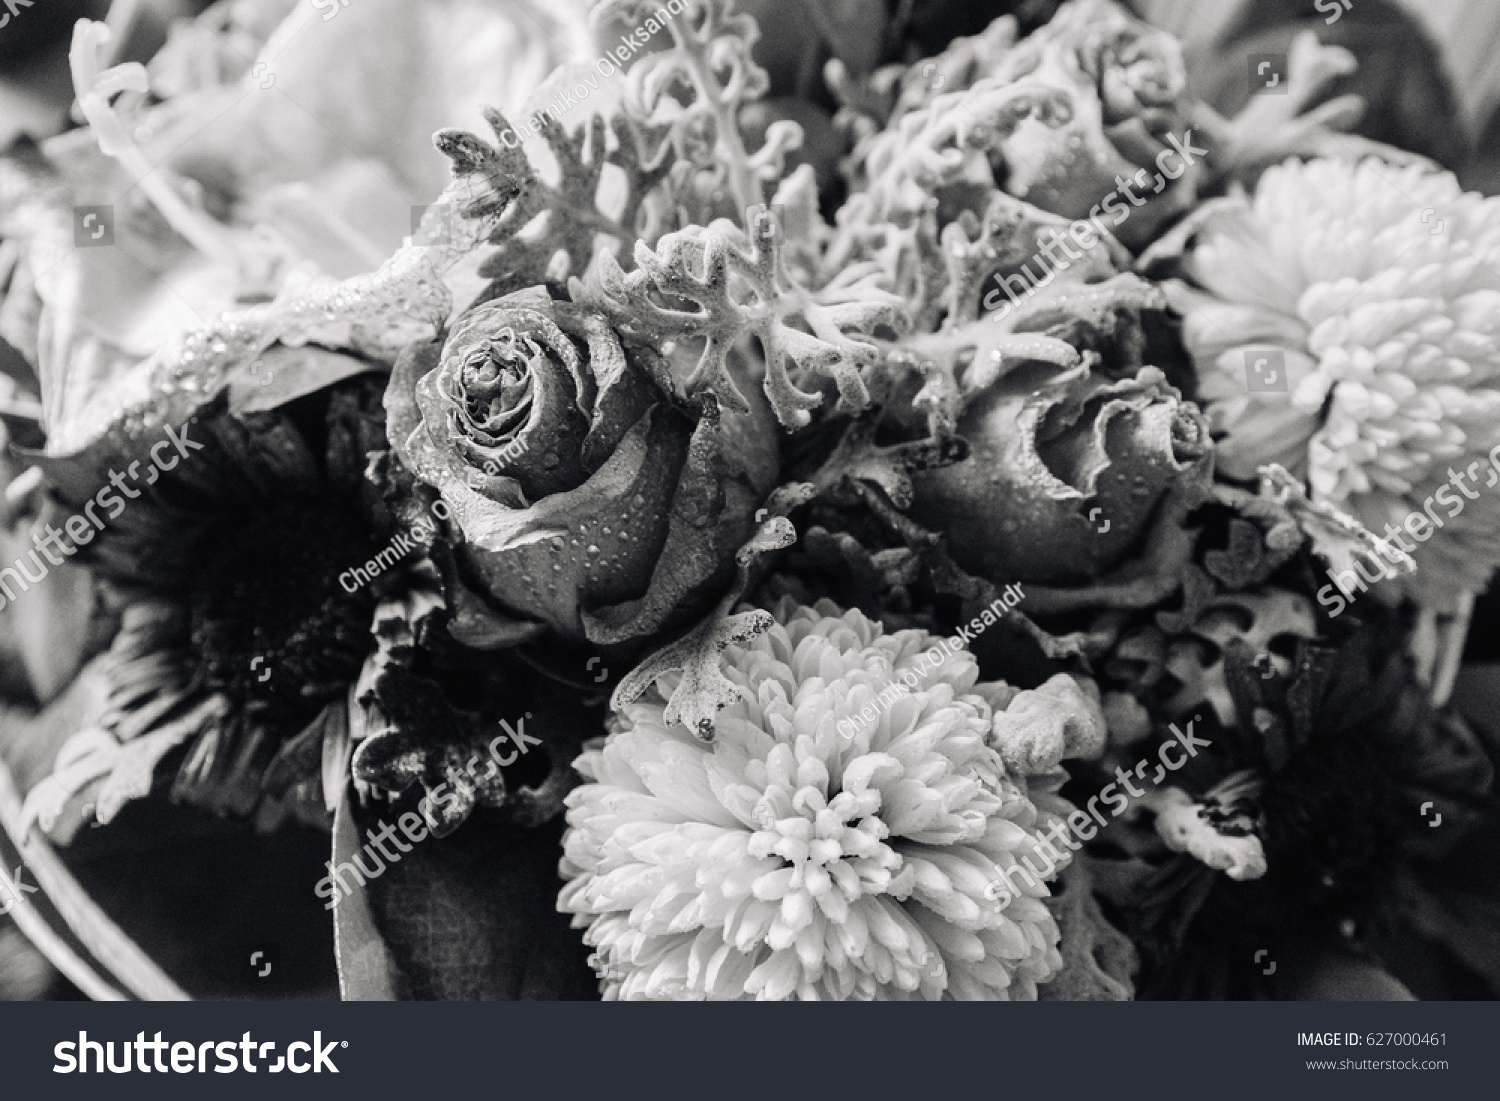 Black White Antique Dead Roses On Stock Photo 627000461 | Shutterstock